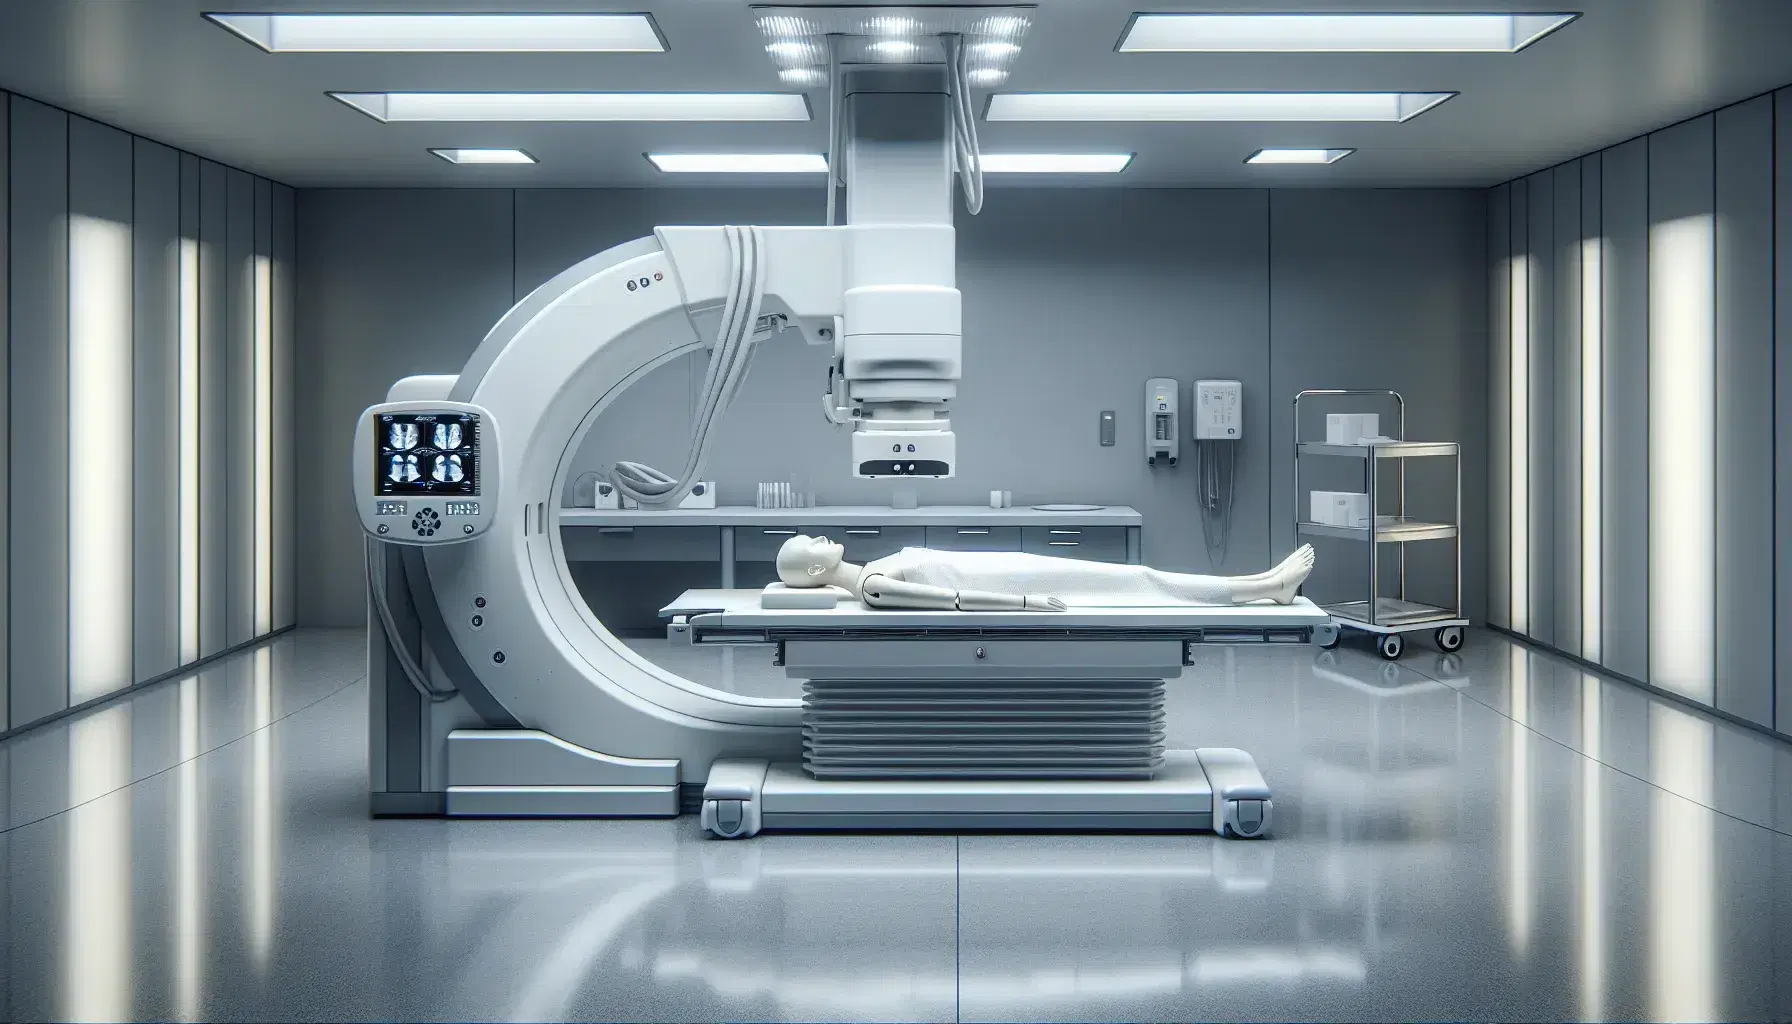 Sala de radiología con máquina de rayos X y maniquí simulando paciente en cama hospitalaria, panel de control y carrito con herramientas médicas.